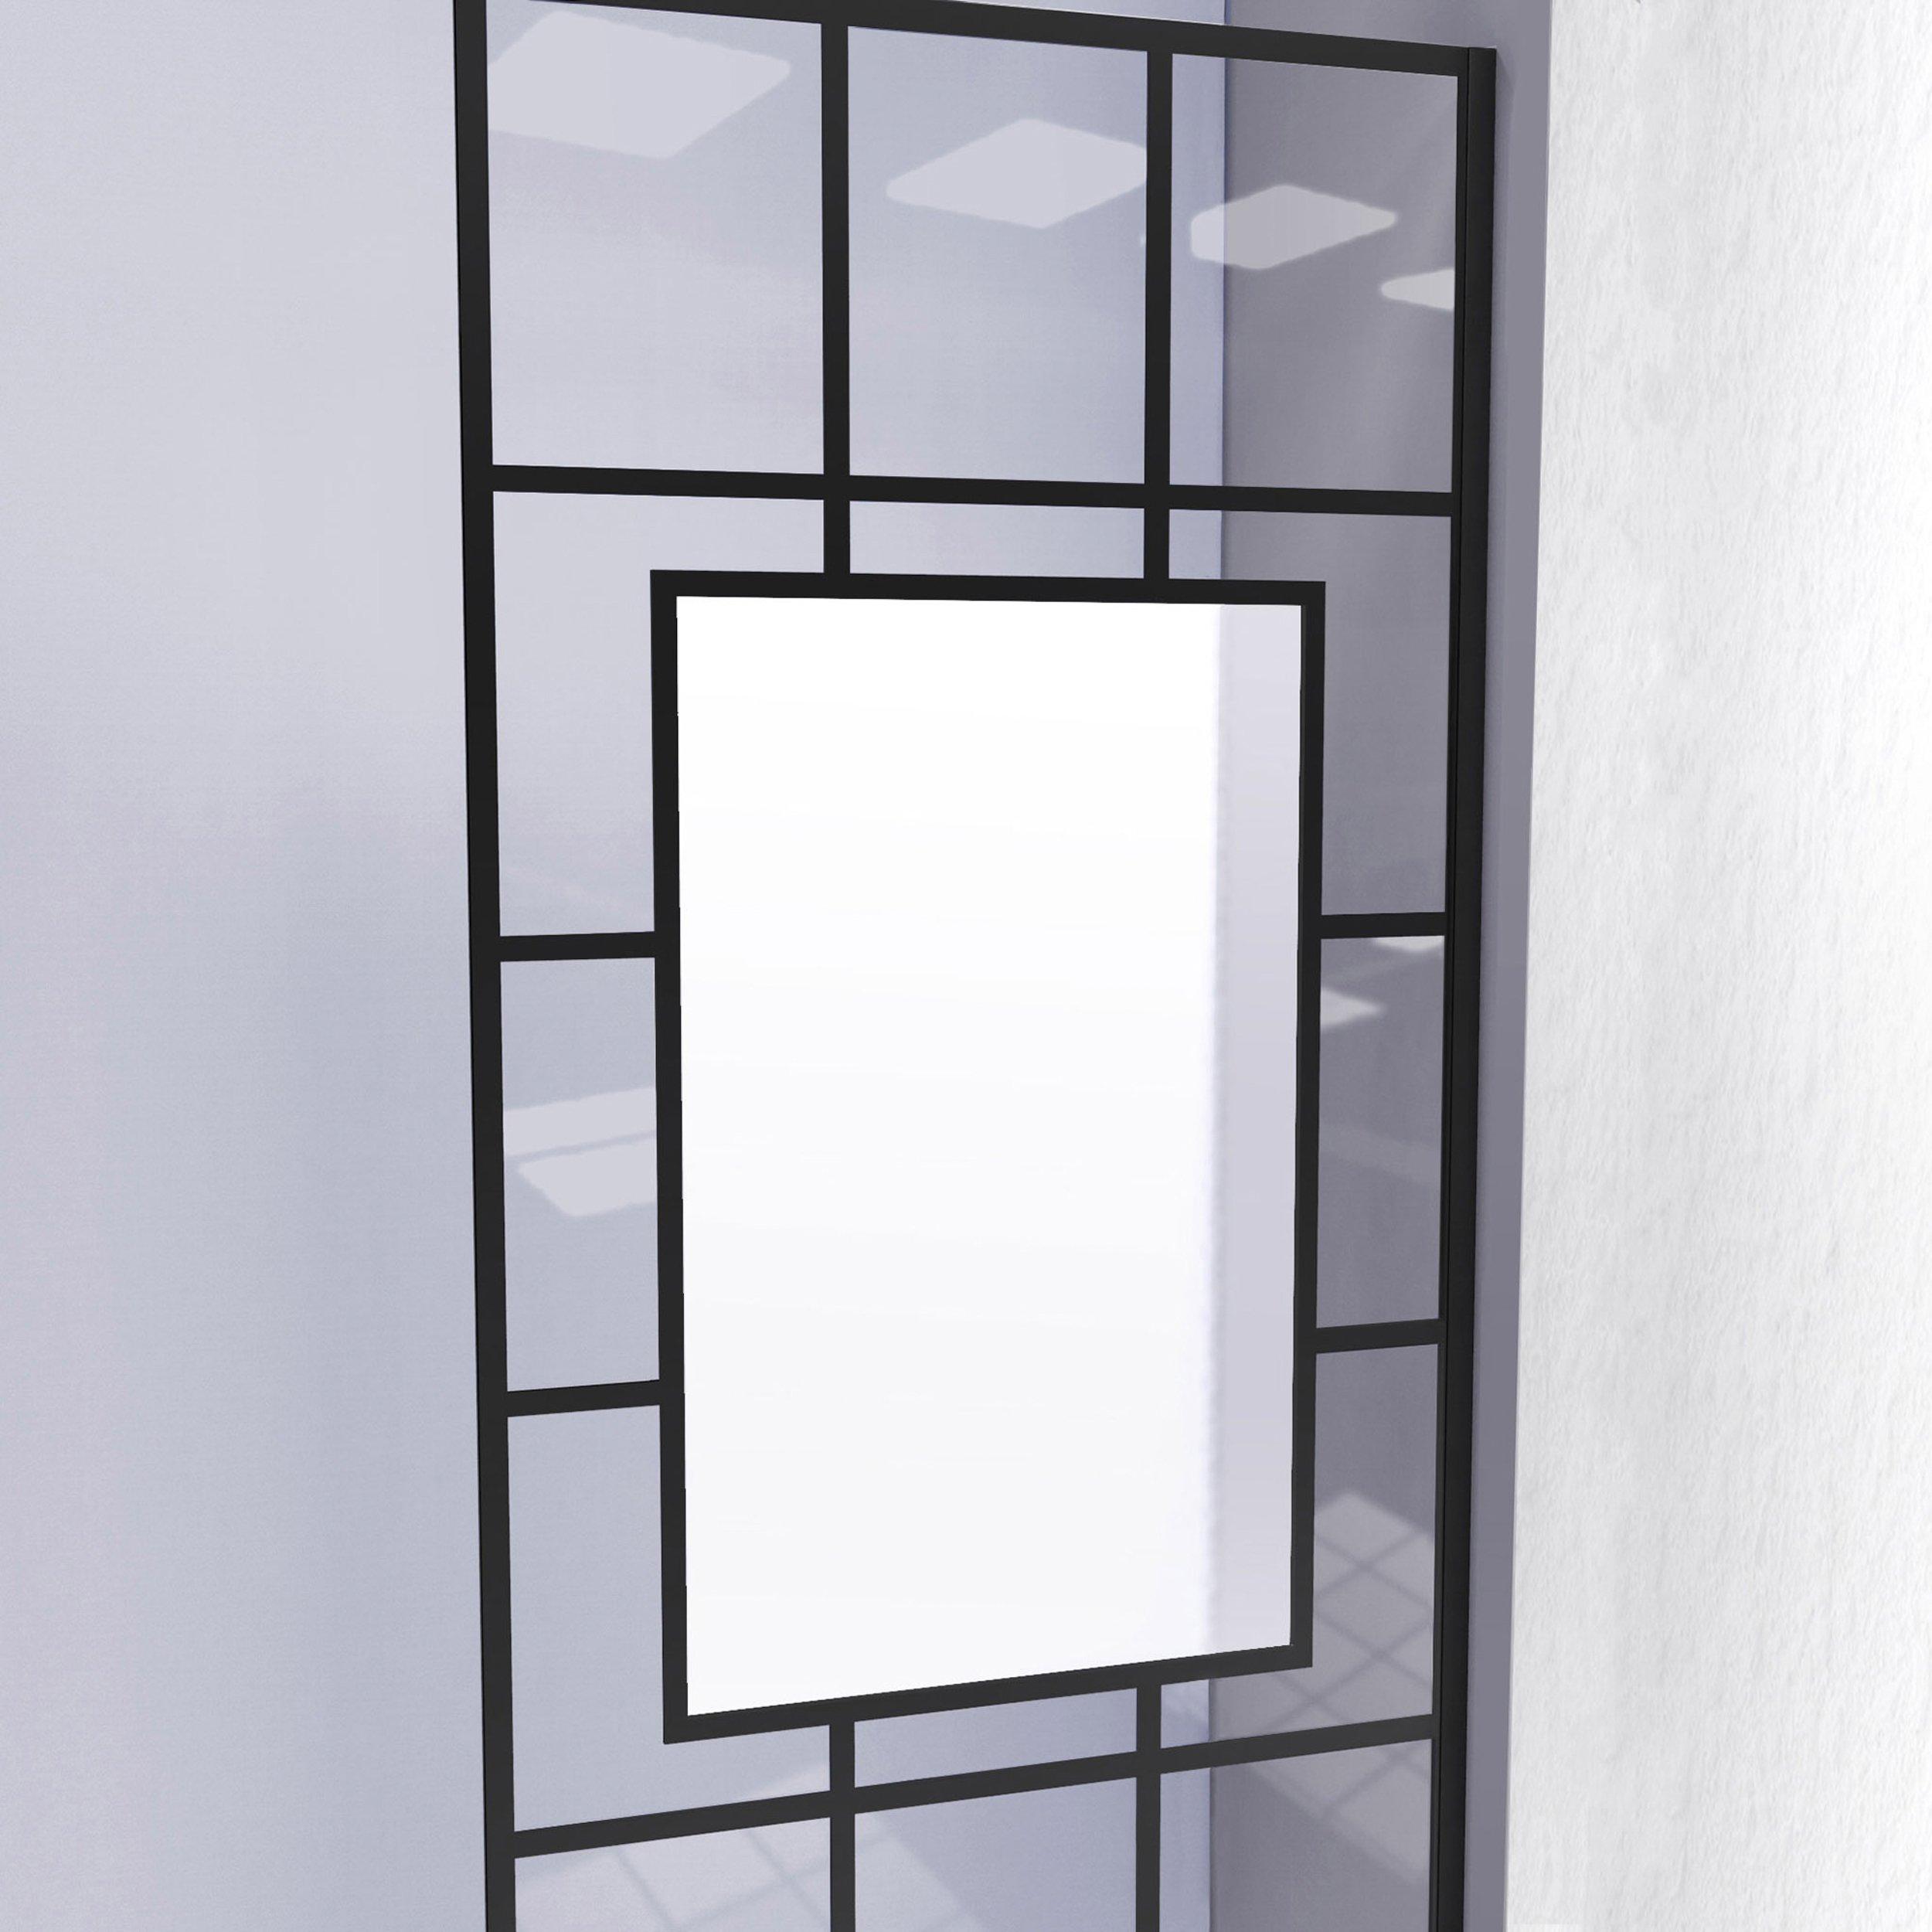 French Linea Avingnon Satin Black Single Panel Frameless Shower Screen